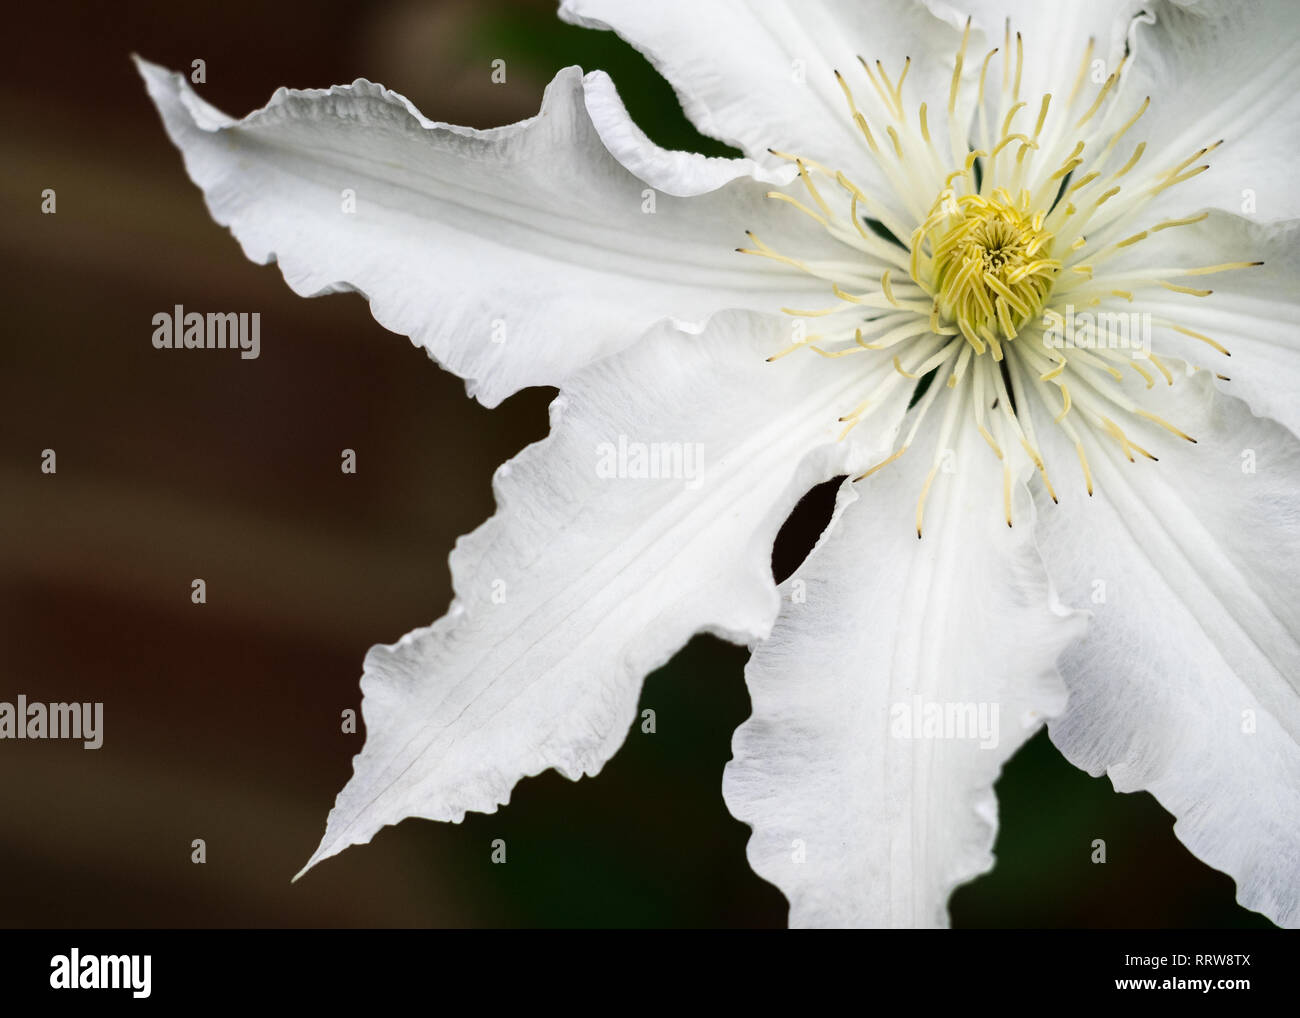 Ein Makro Detail close up close-up ein weißes Blütenblatt Clematis 'Gillian Blades 'äußeren Blütenblatt Kante von oben Gesicht auf mit gelben Staubgefäße dunkler Hintergrund Stockfoto